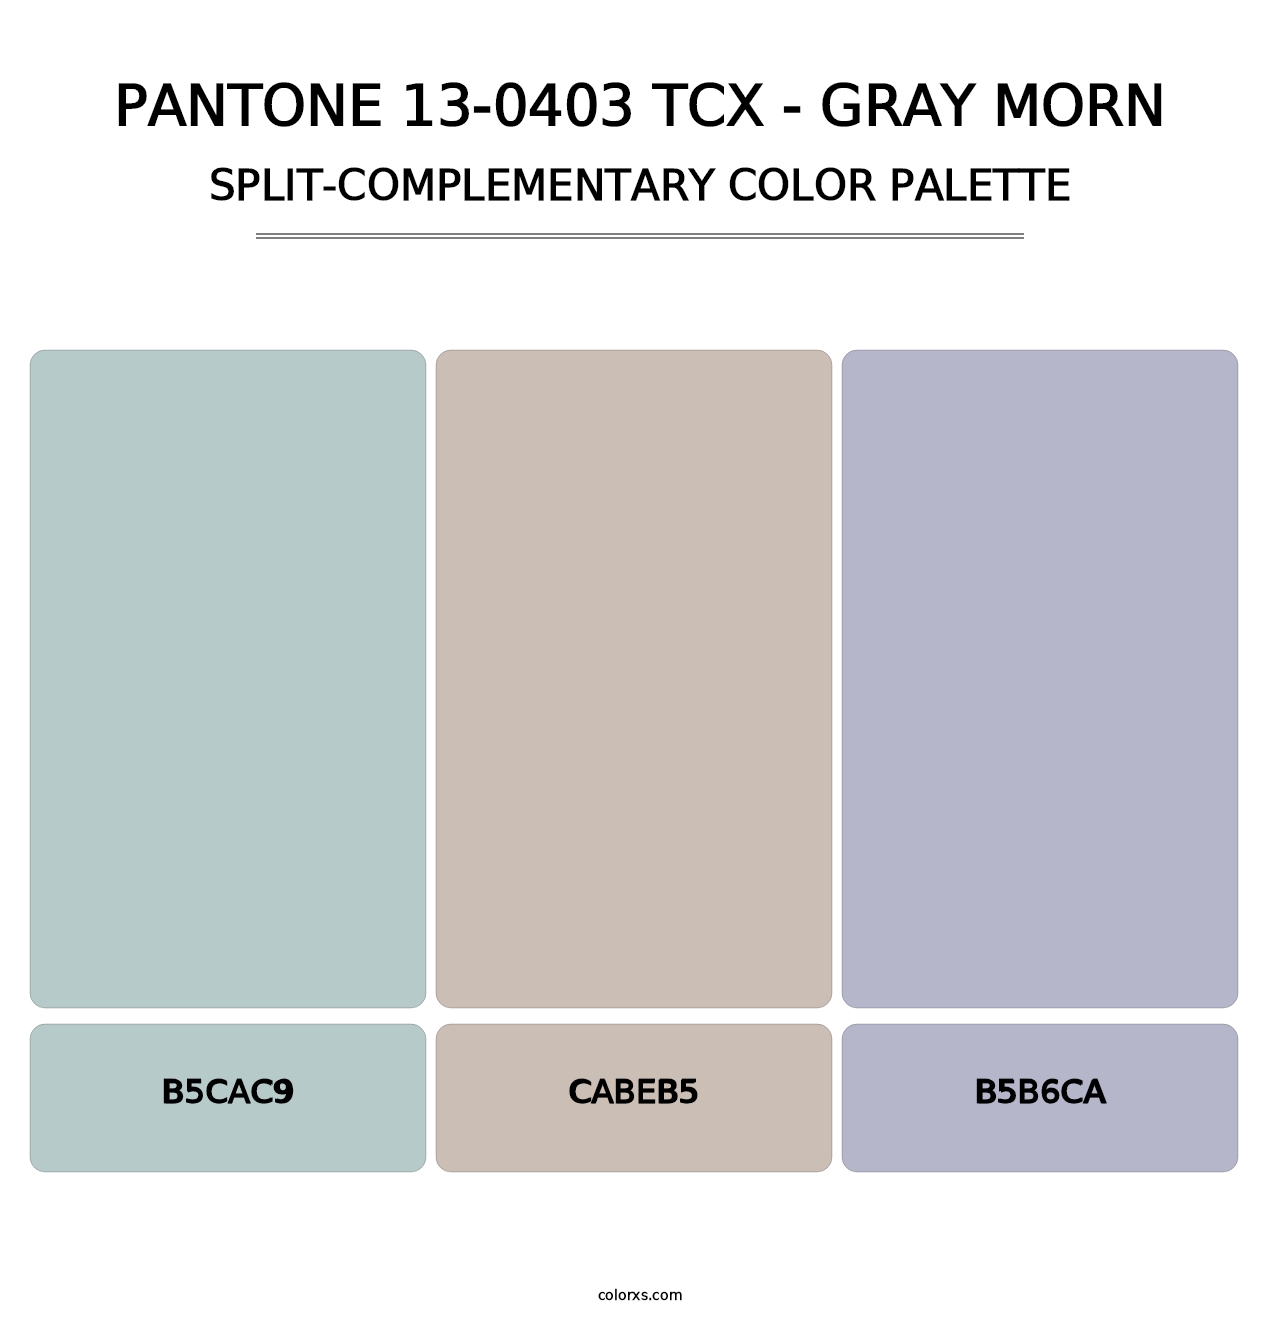 PANTONE 13-0403 TCX - Gray Morn - Split-Complementary Color Palette